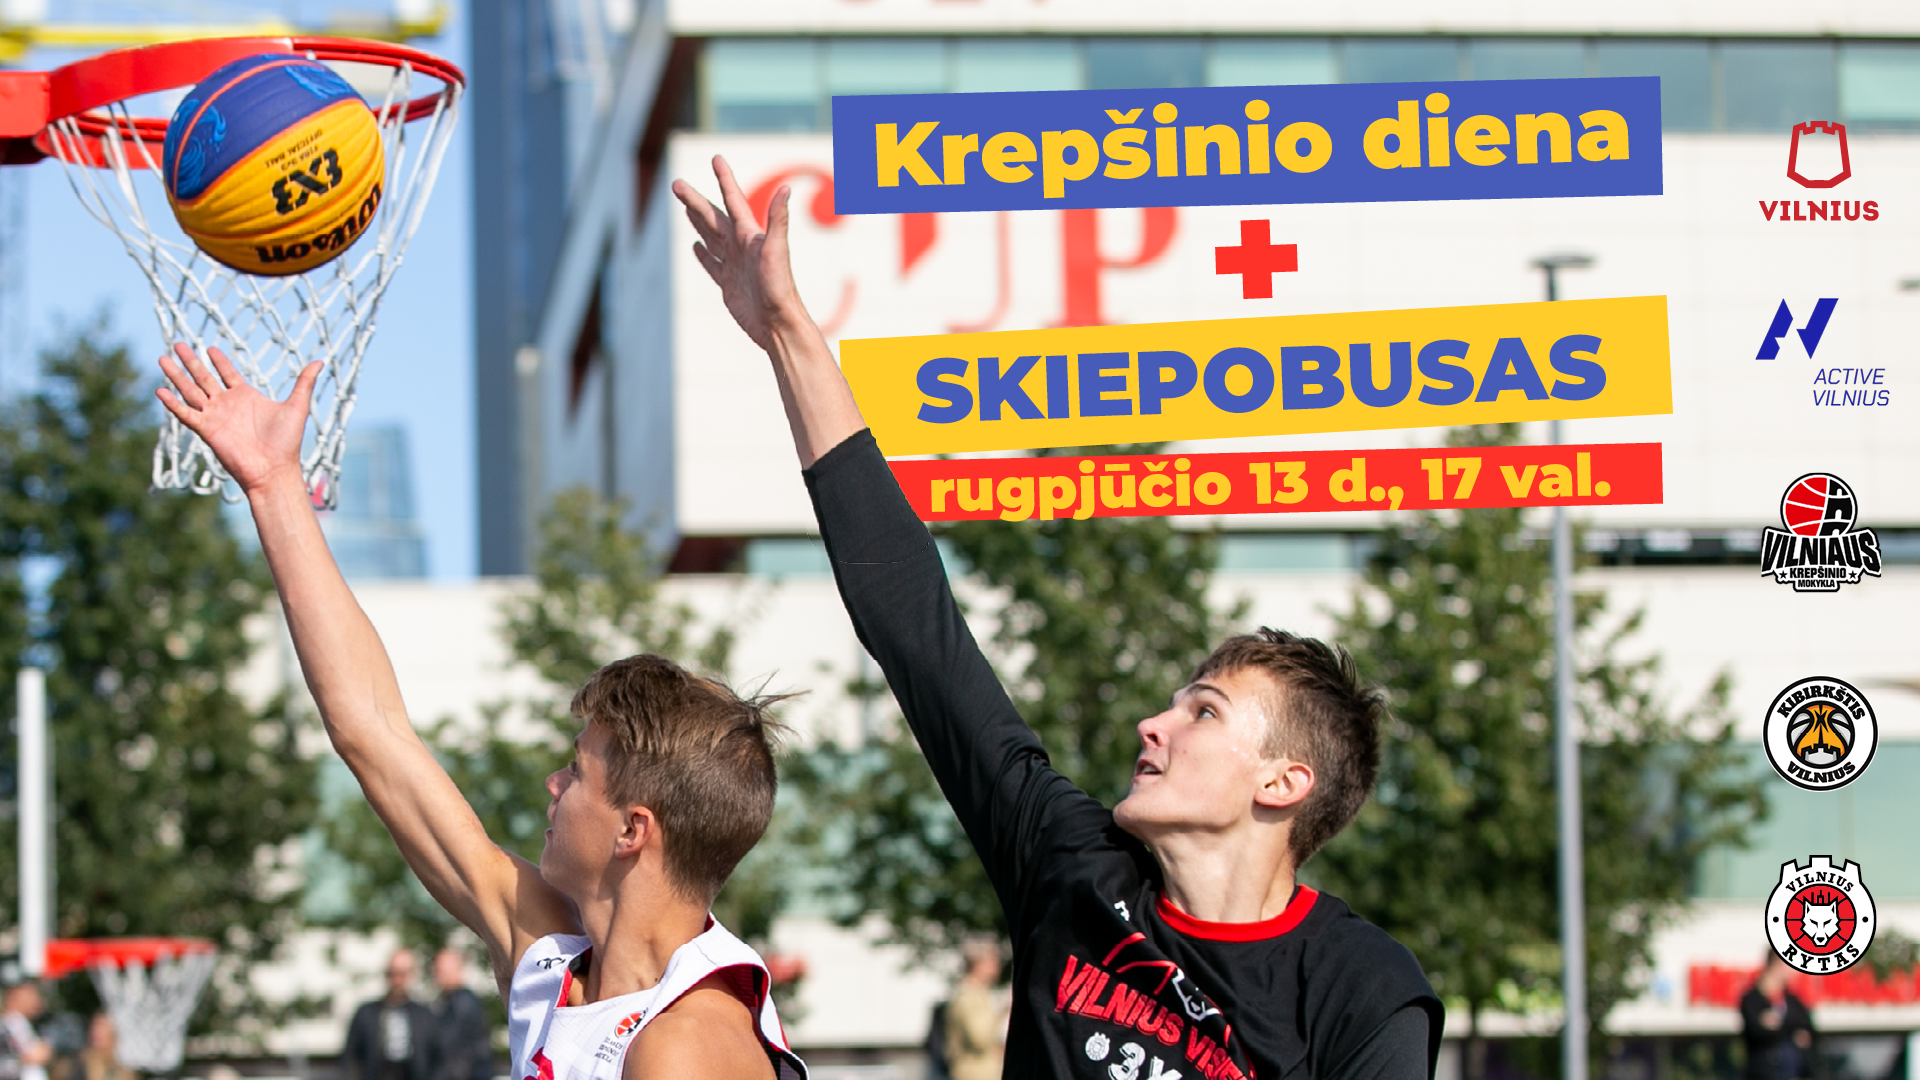 Vilnius vakcinaciją skatins pozityviai – kvies paauglius sportuoti su krepšinio žvaigždėmis ir gauti skiepą